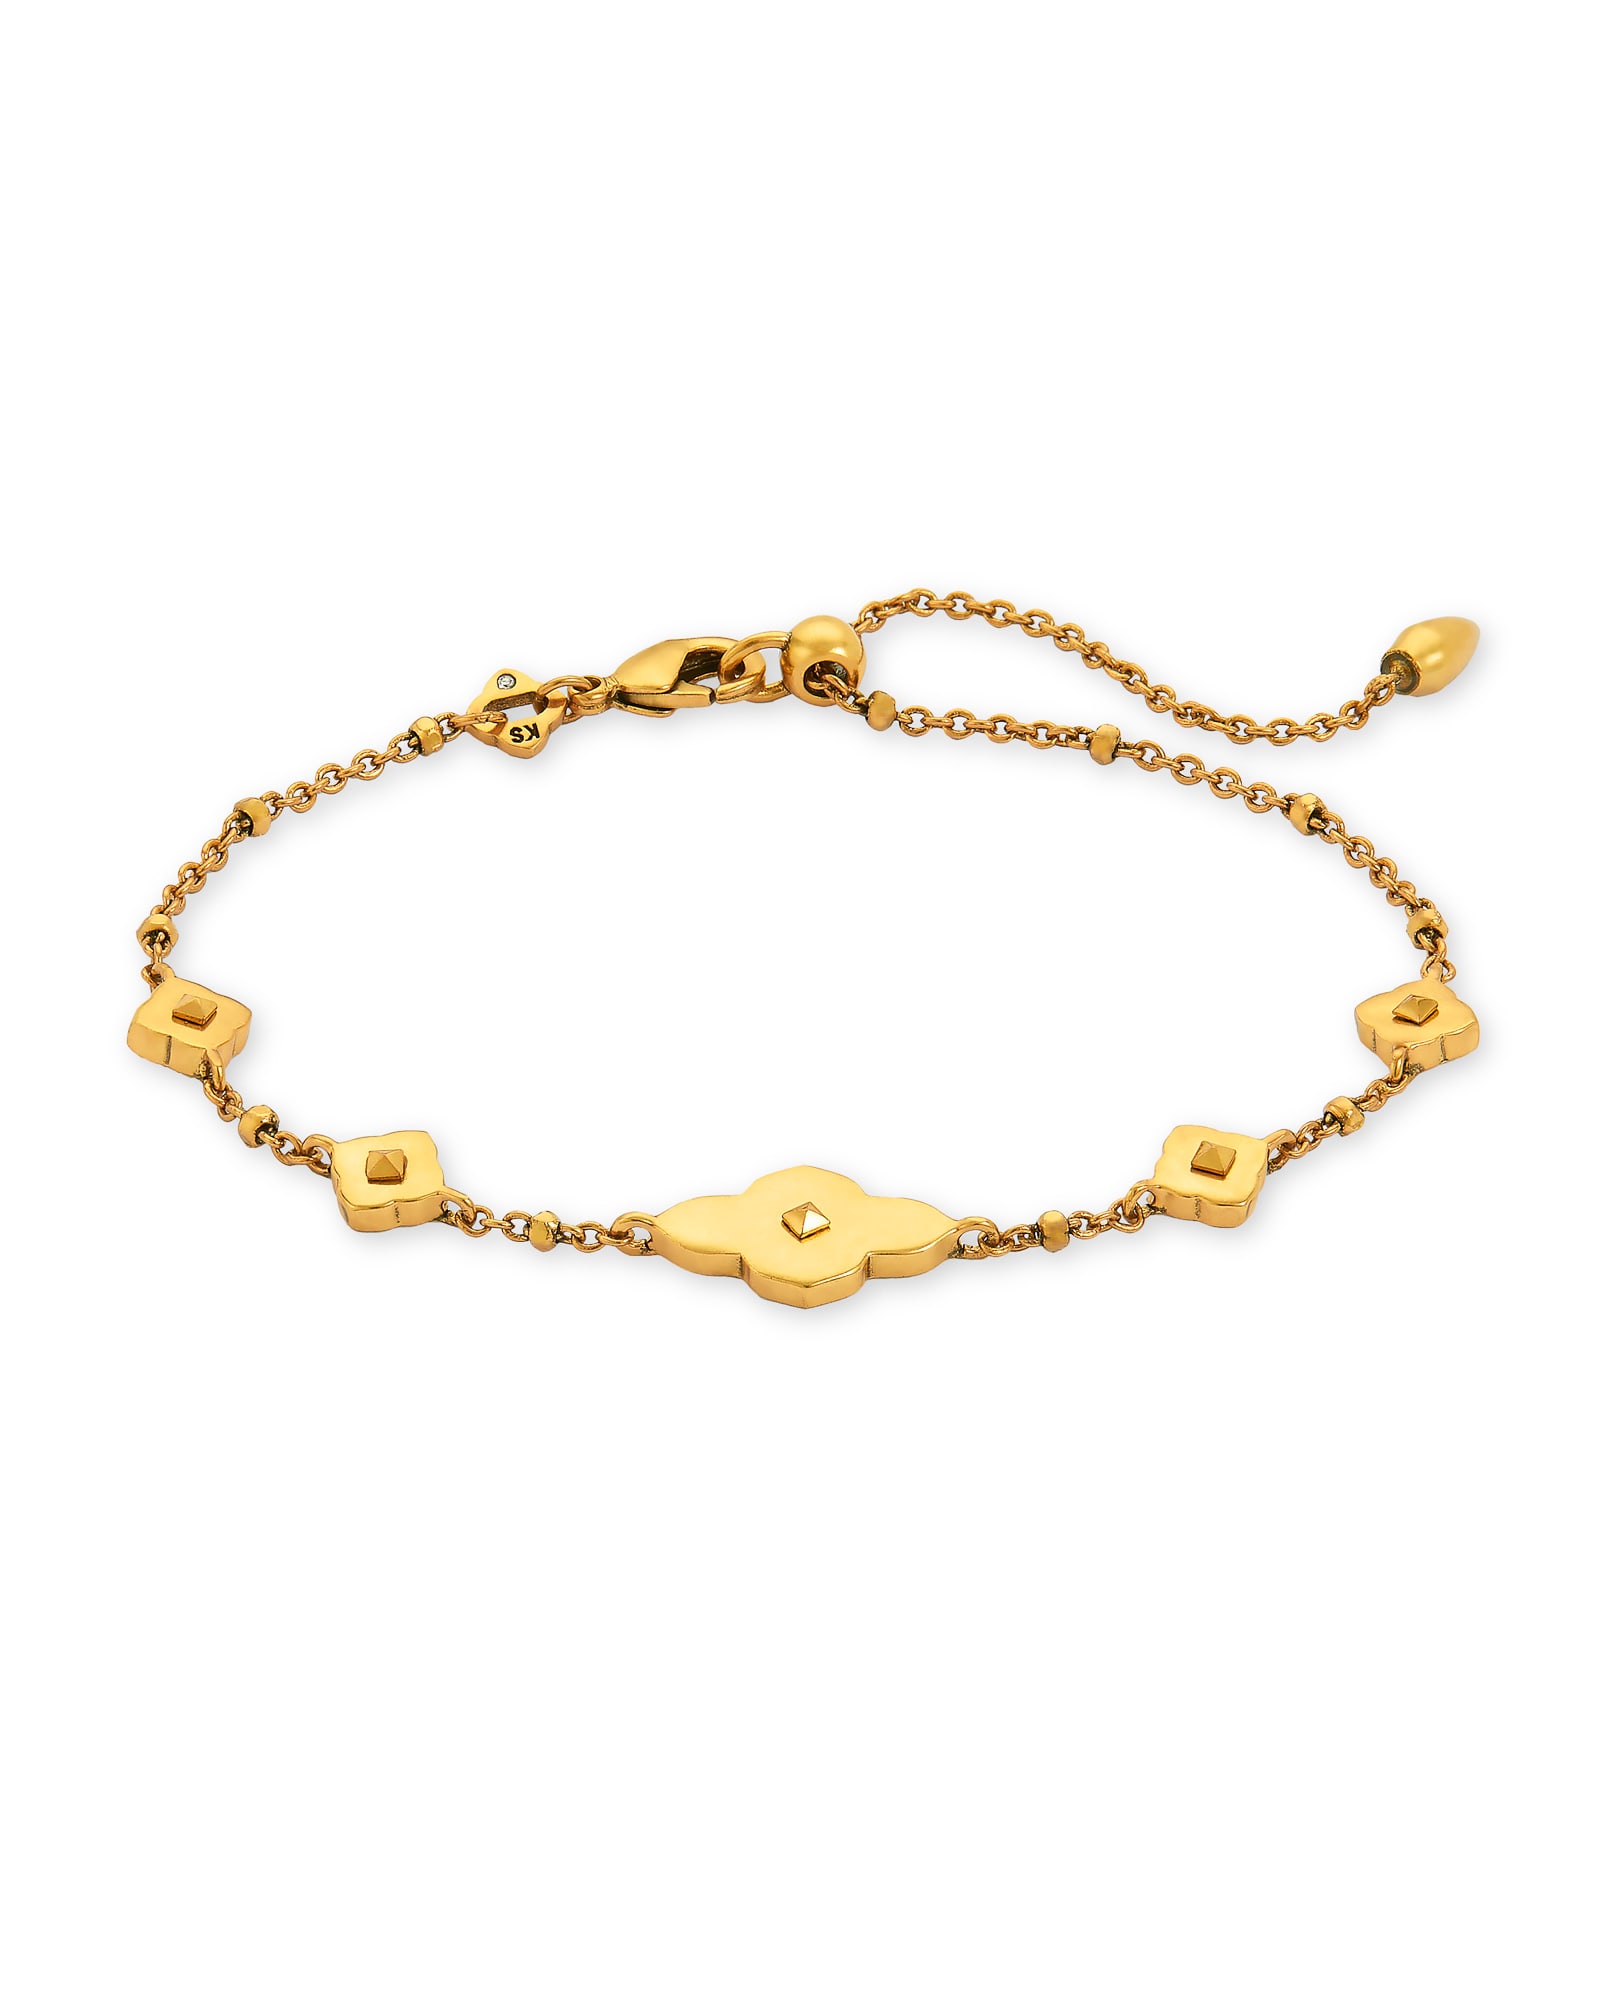 Abbie Delicate Chain Bracelet in Vintage Gold | Kendra Scott